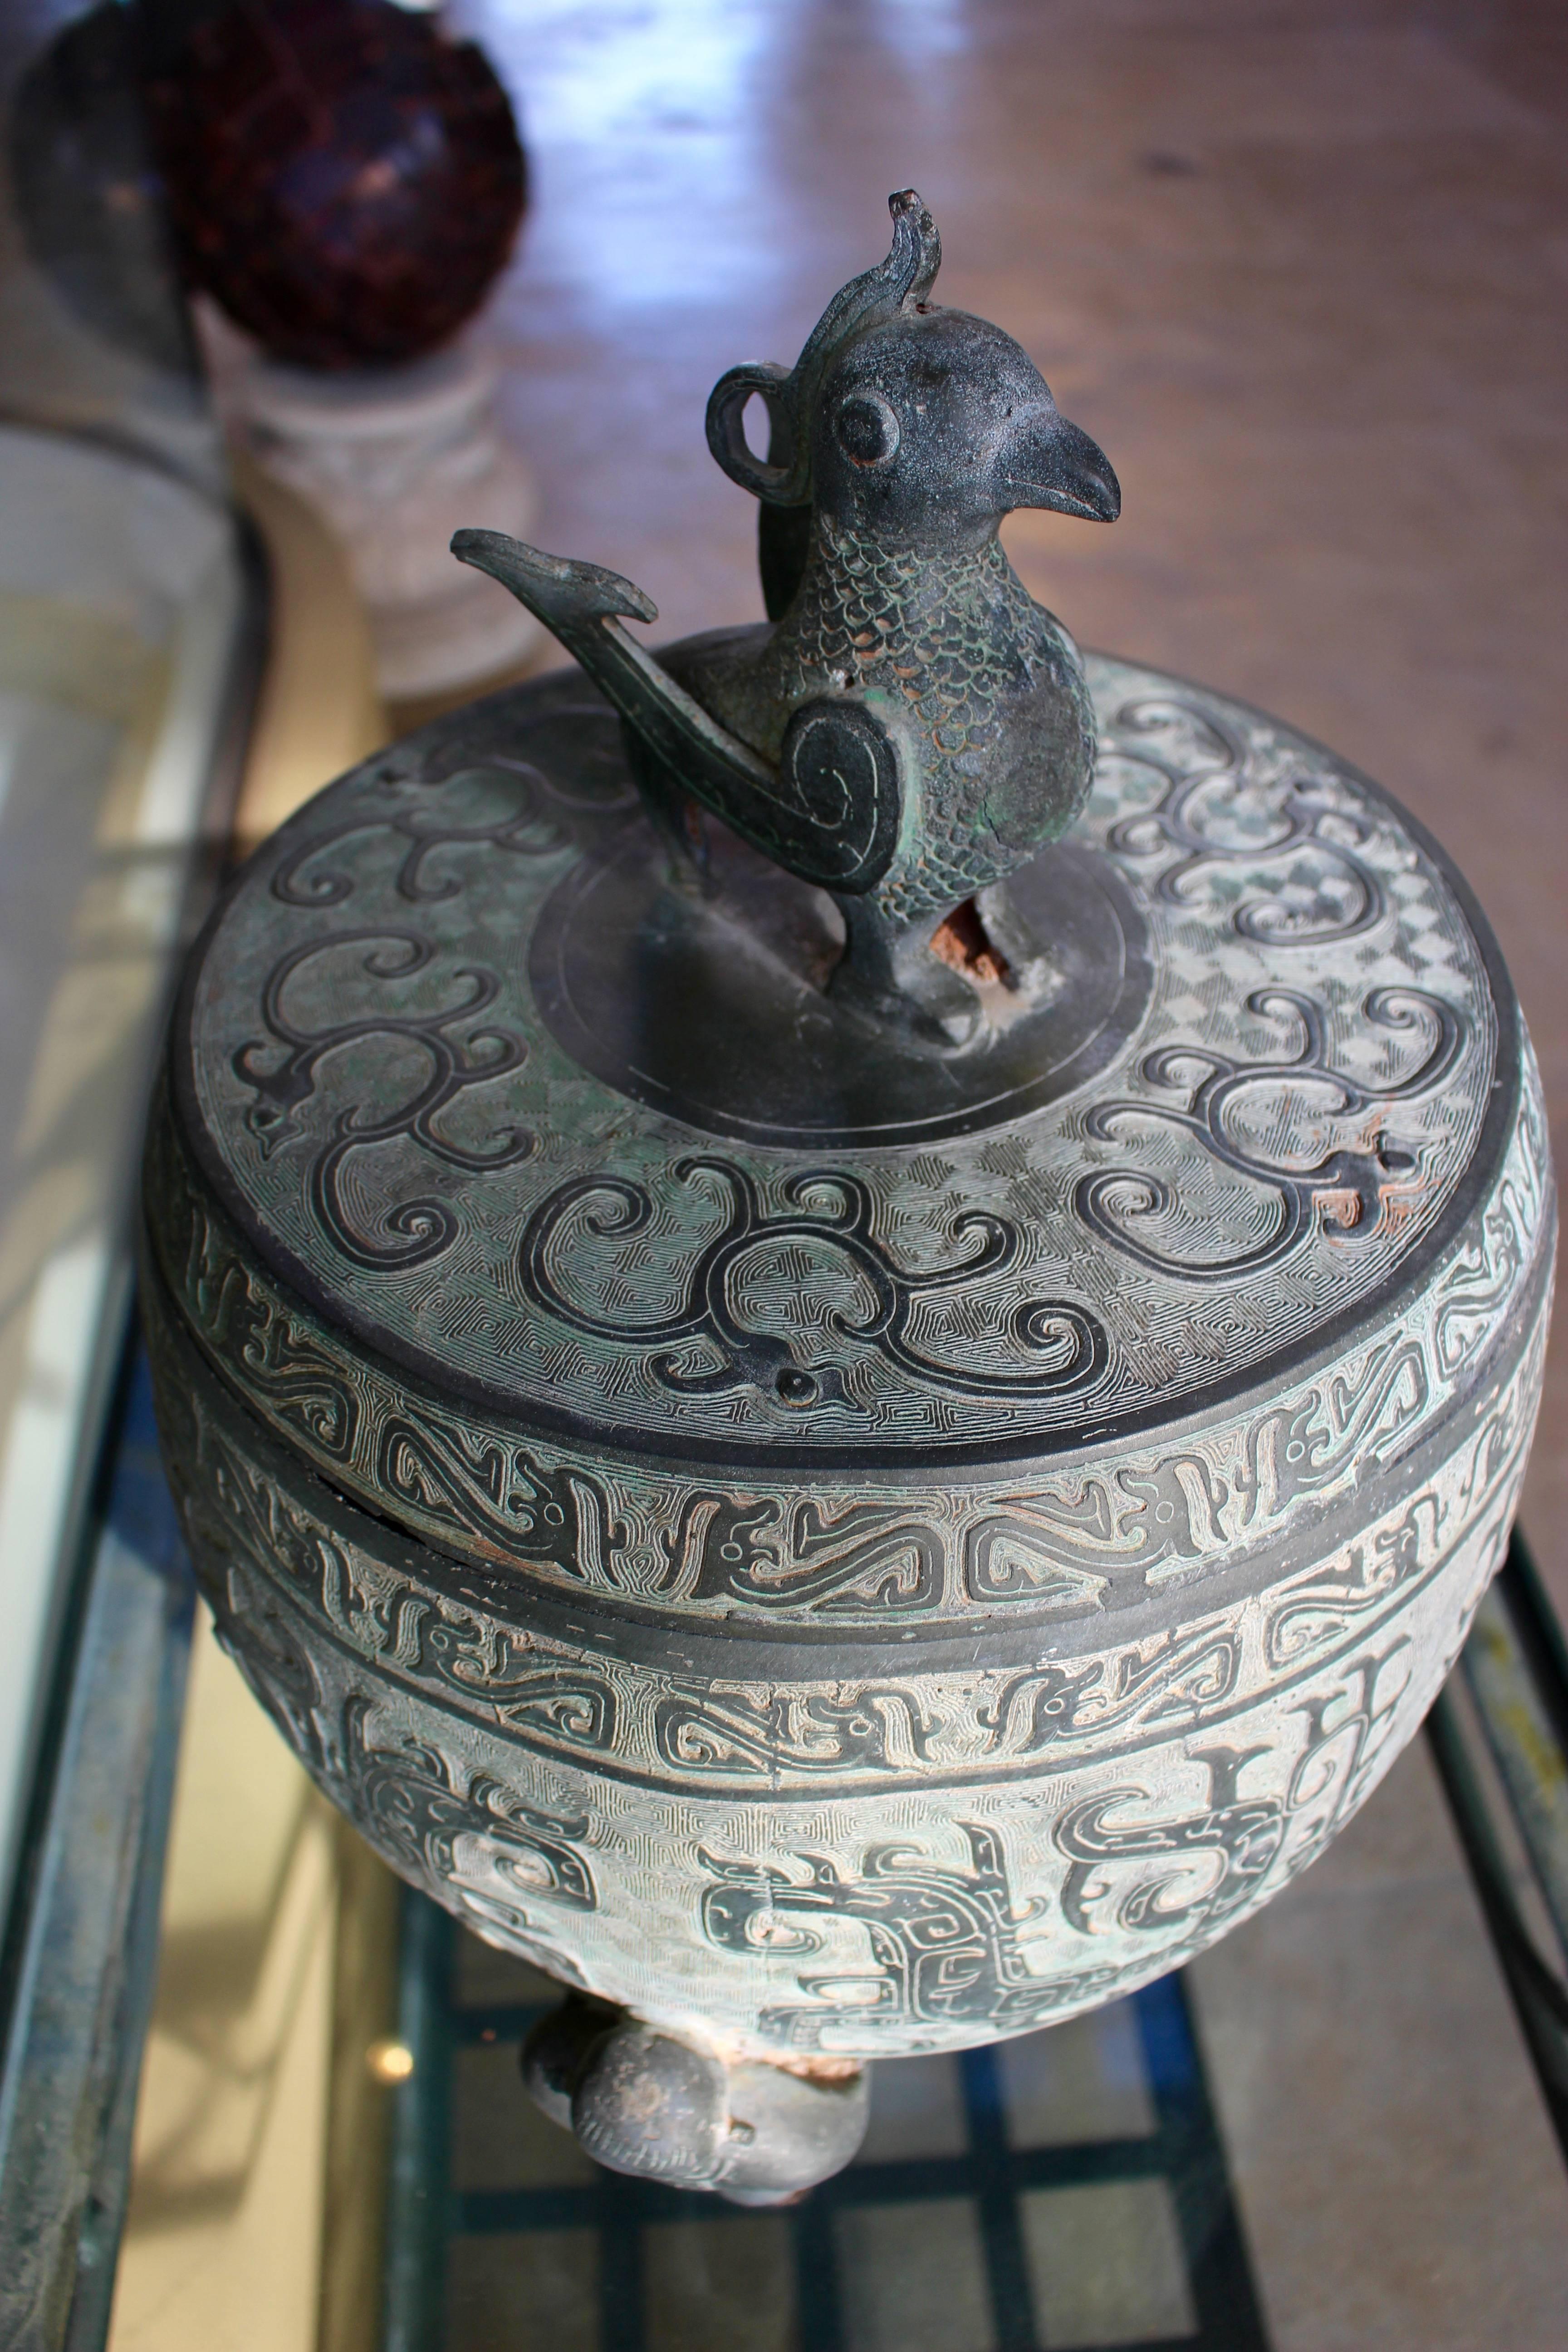 dd decorative urn